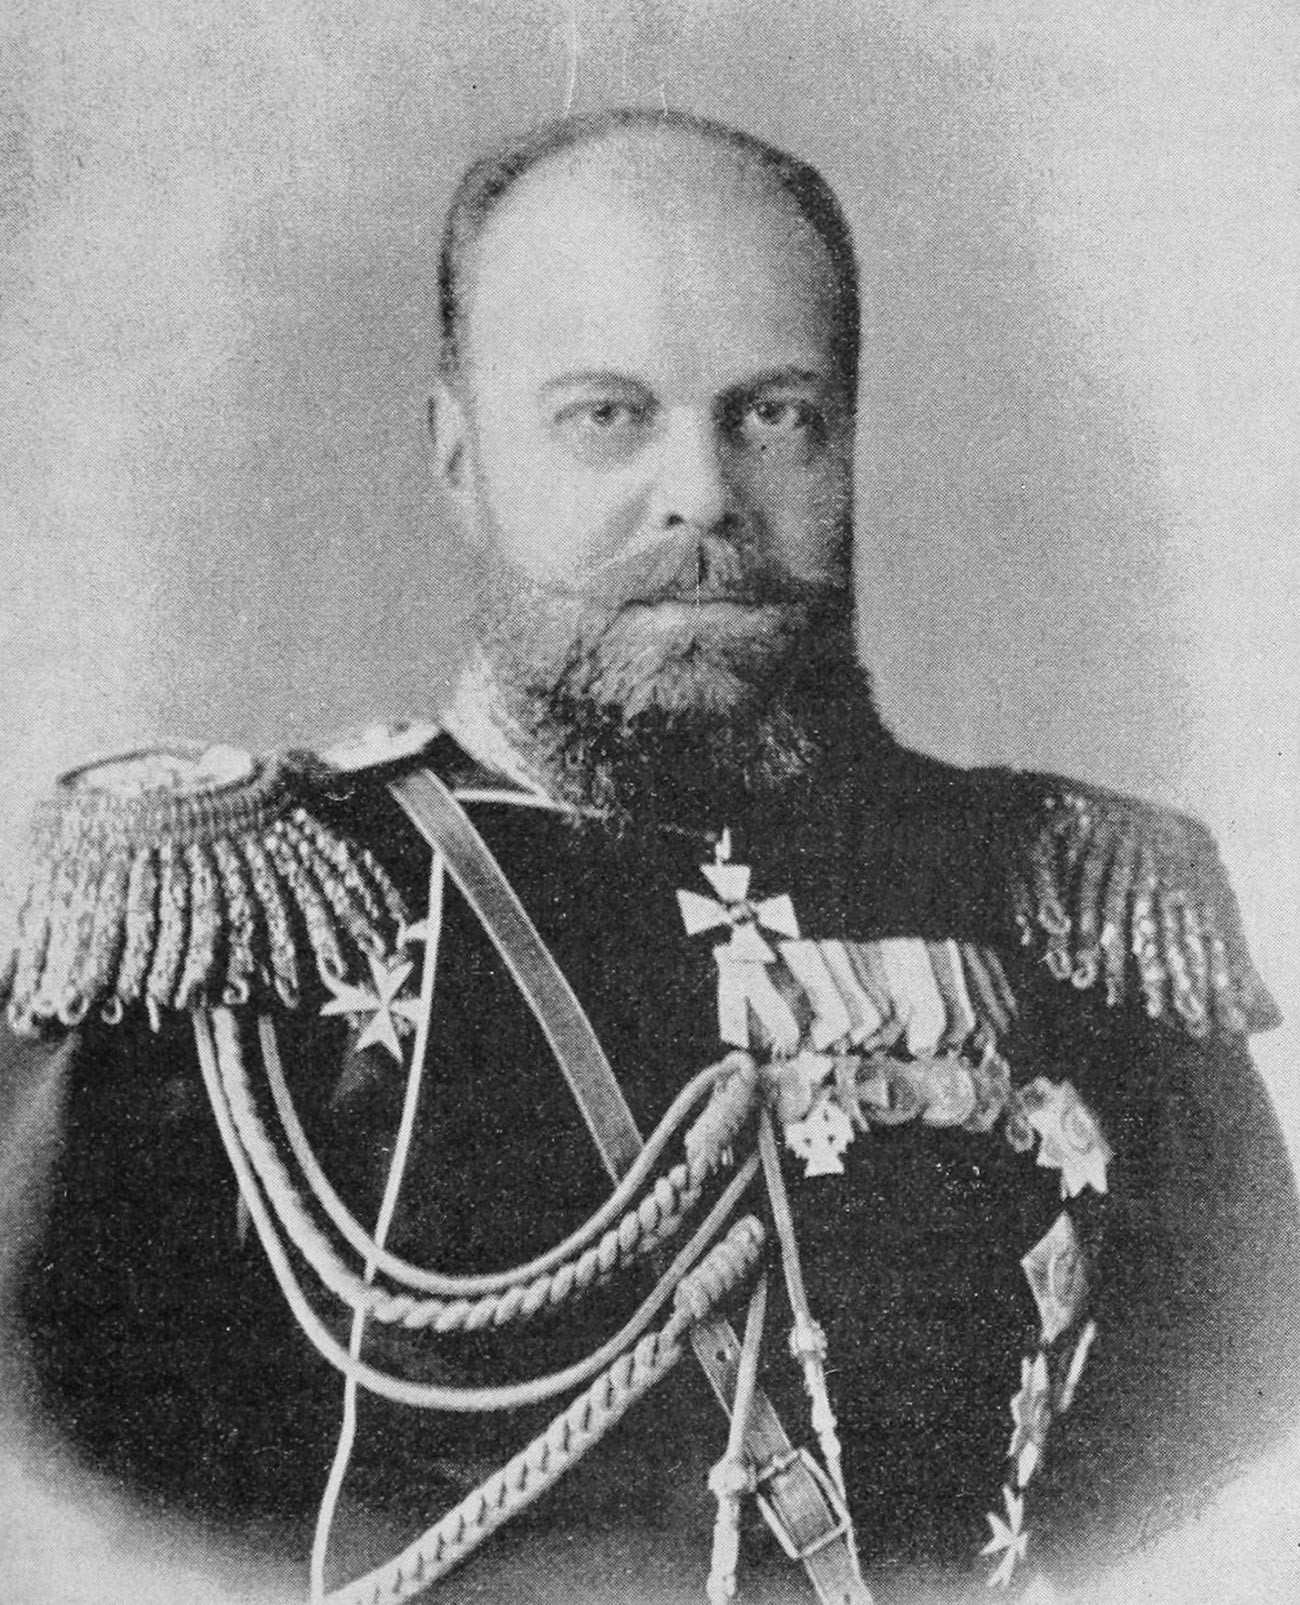 The Czar of Russia (Alexander III of Russia).